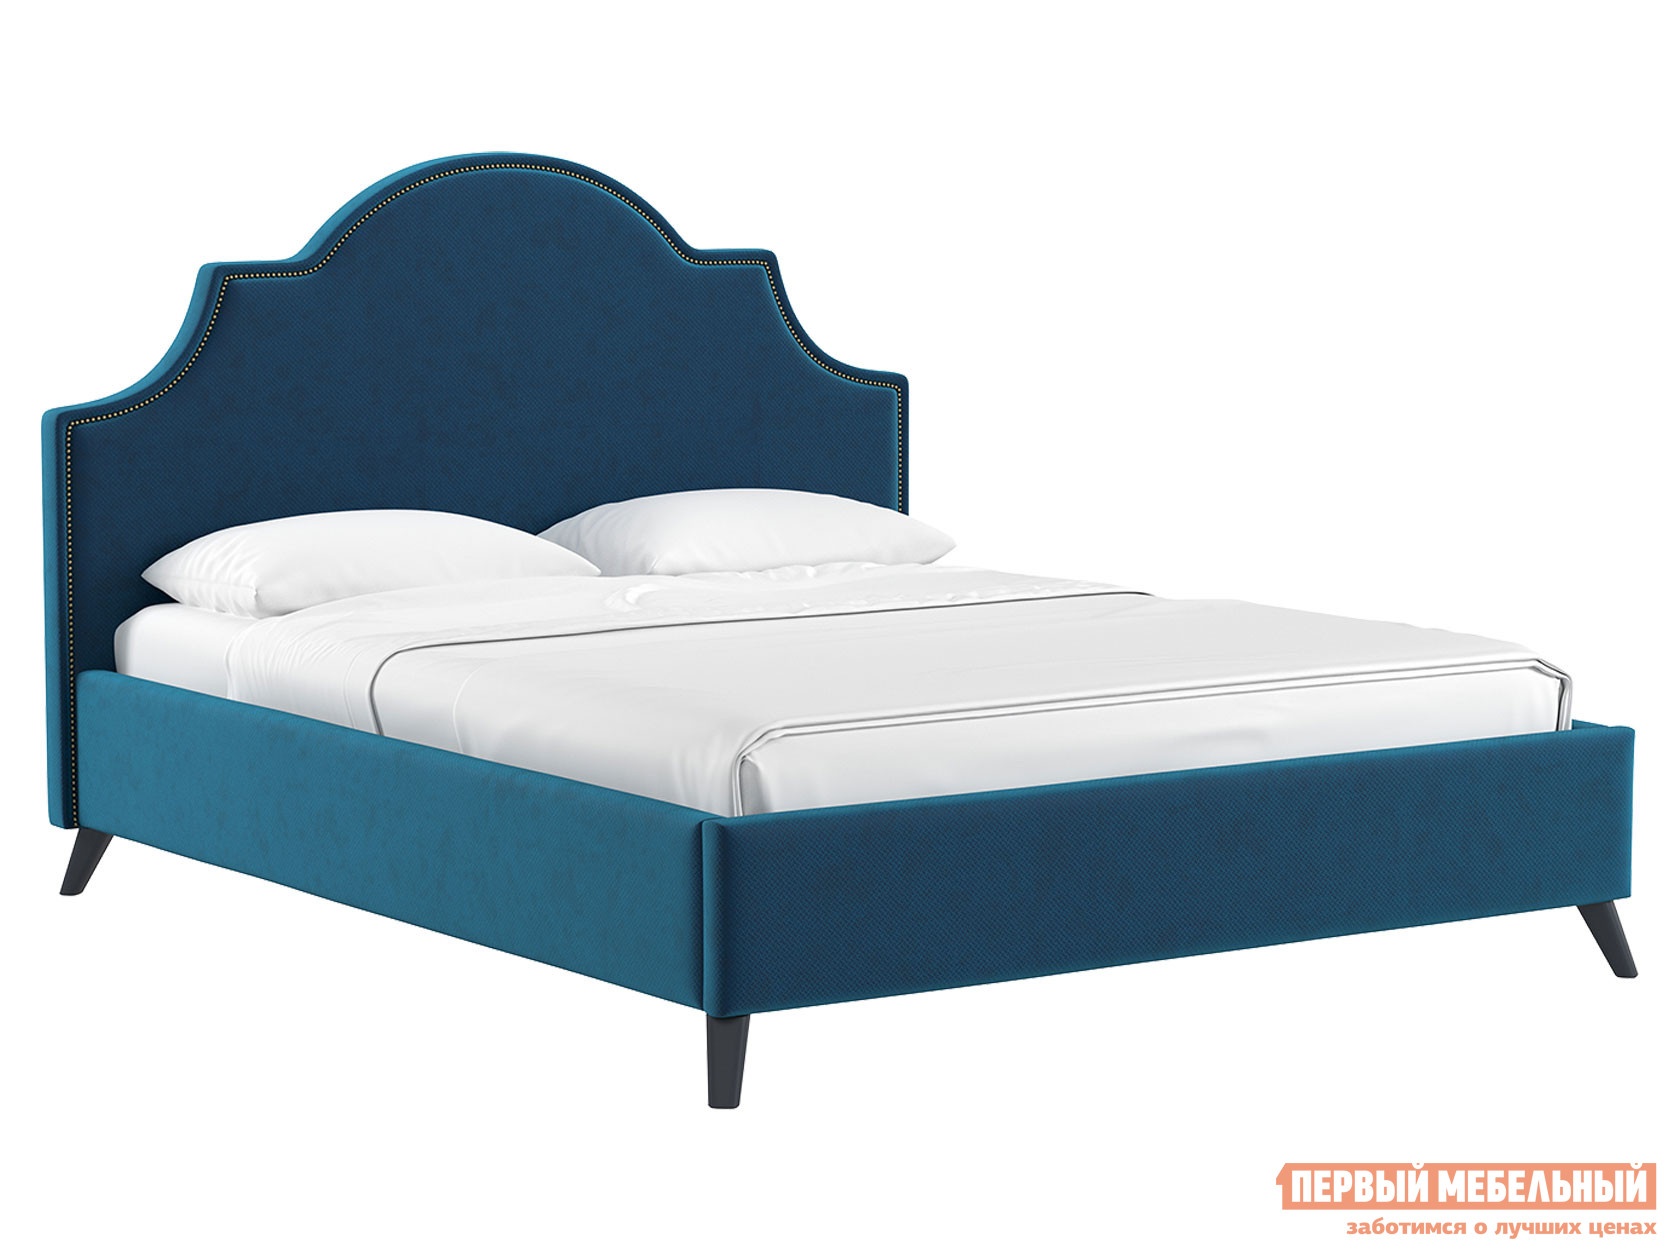 Двуспальная кровать кровать с подъемным механизмом фаина темно-синий,велюр, 1600 х 2000 мм